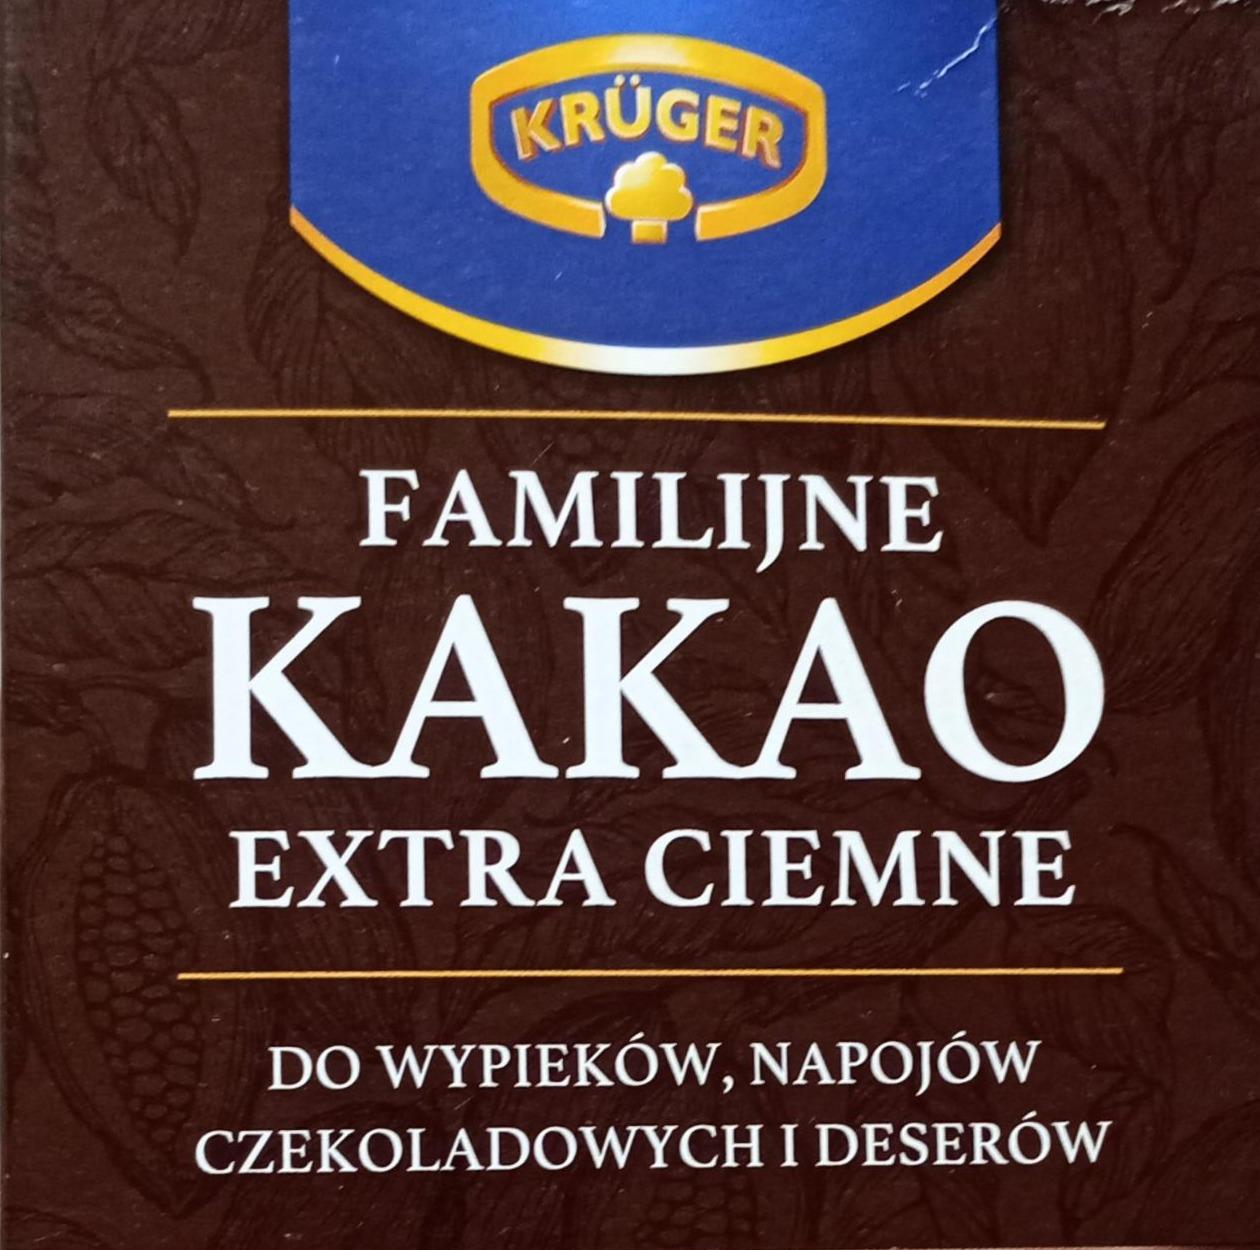 Фото - Сімейне Какао Екстра Темне Familijne kakao extra ciemne Krüger